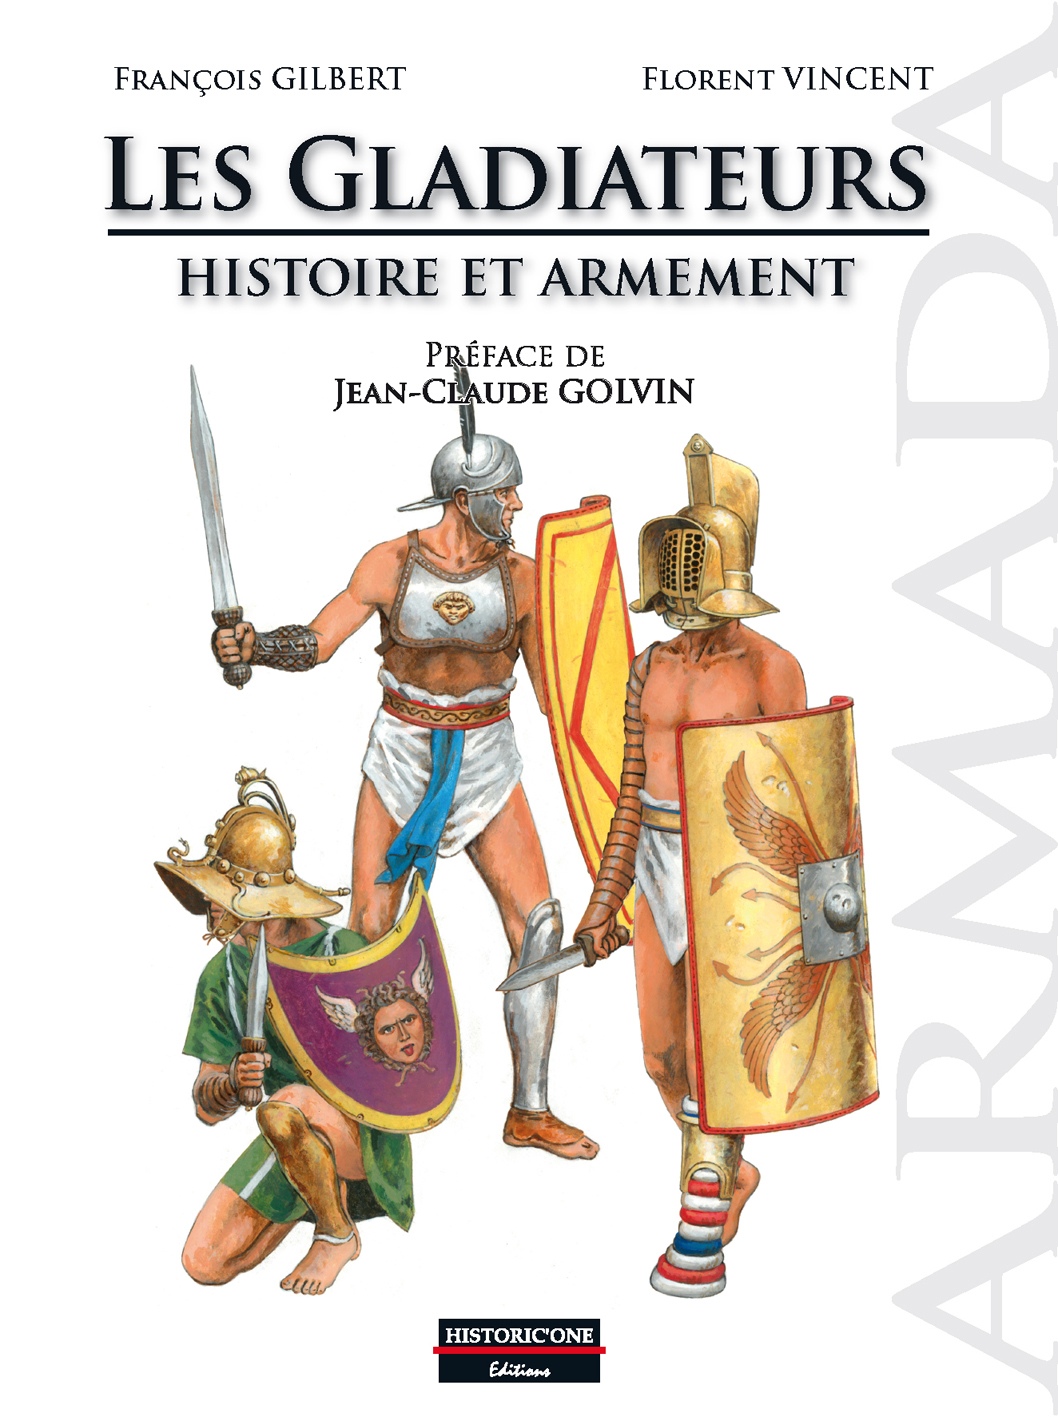 Les Gladiateurs. Histoire et armement, 2020, 120 p.